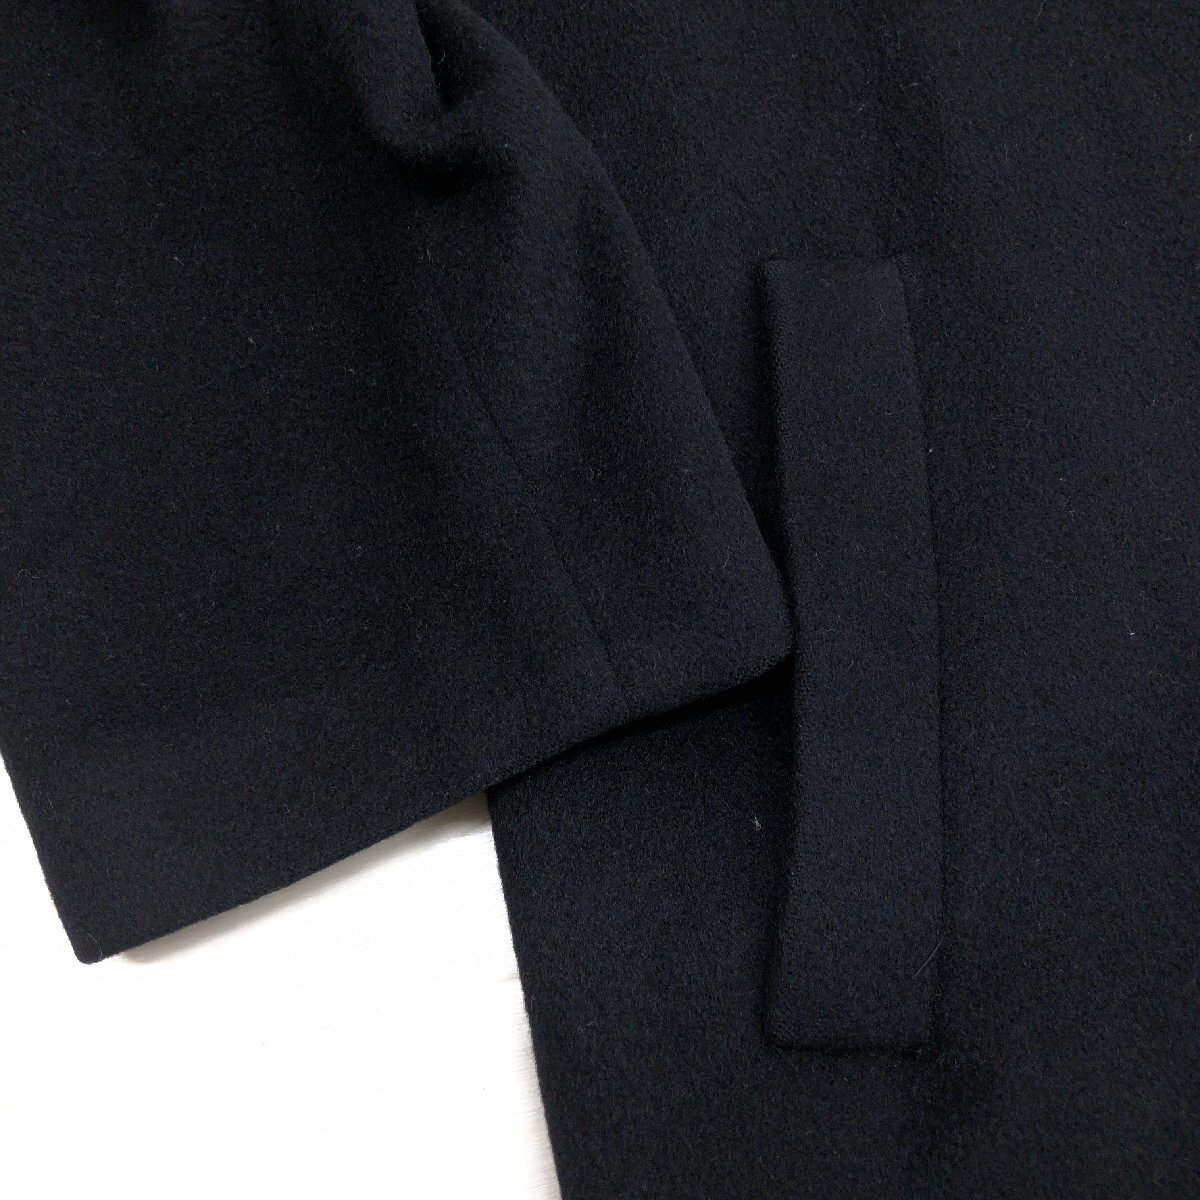 ◆mallage マロージュ 高級カシミヤ100% ロングコート F 黒 ブラック ウールコート カシミア 日本製 国内正規品 レディース 女性用 婦人_画像6